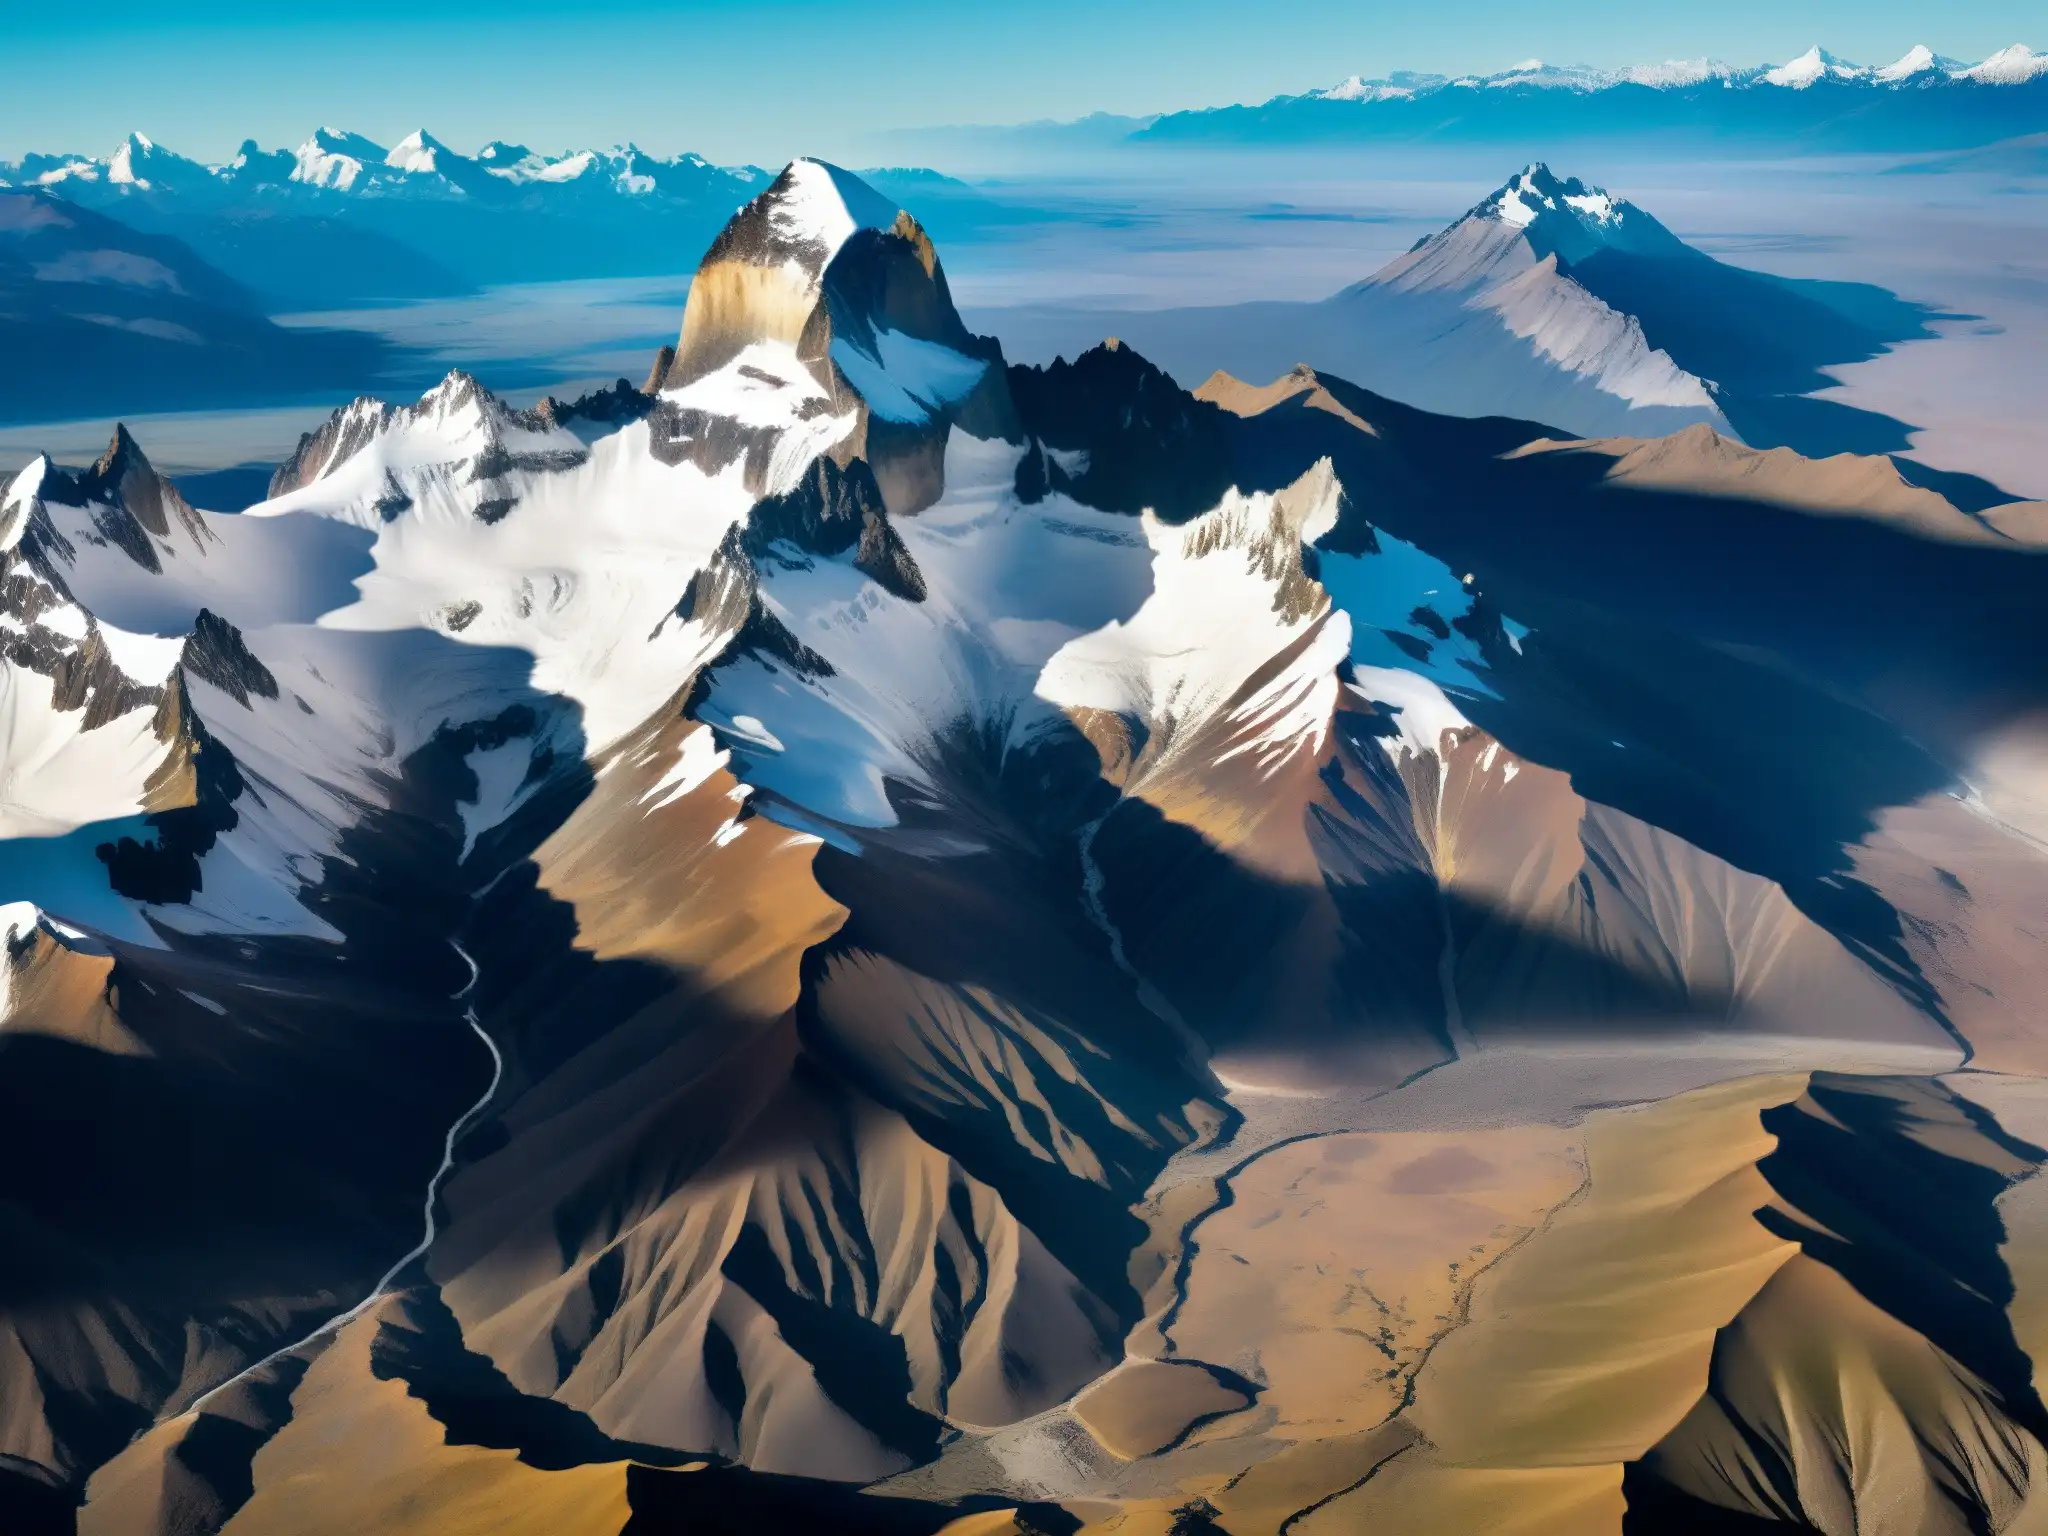 Una impresionante fotografía aérea de la áspera y ventosa región de la Patagonia, con los picos nevados de los Andes y la estepa patagónica